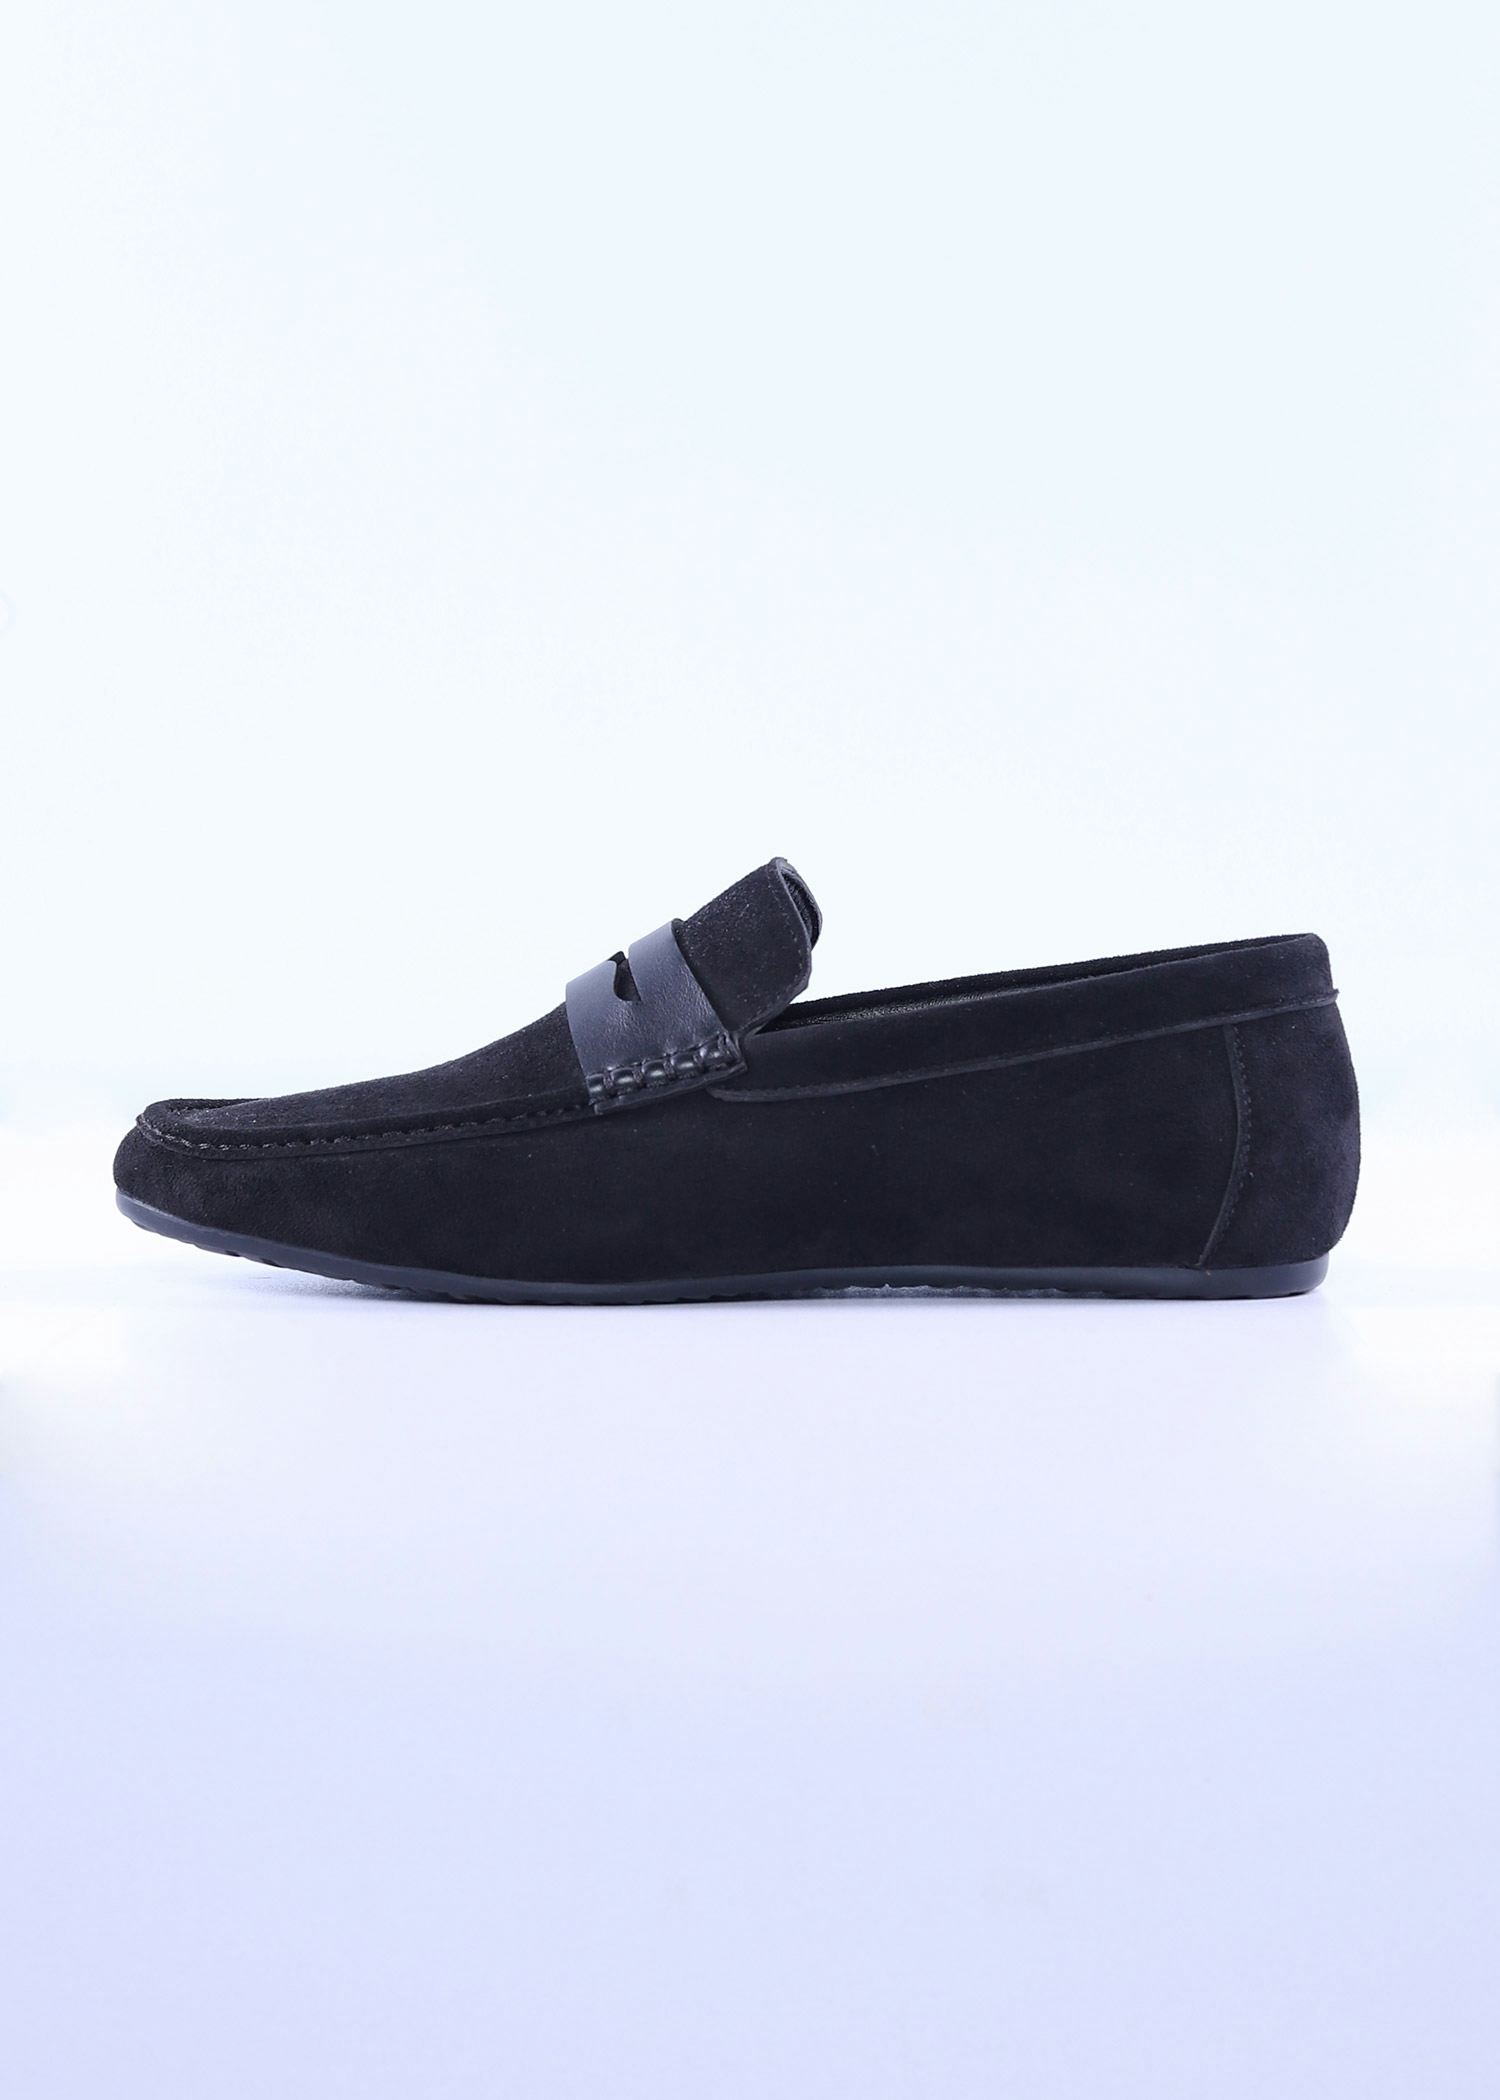 navia mens shoes black color cover